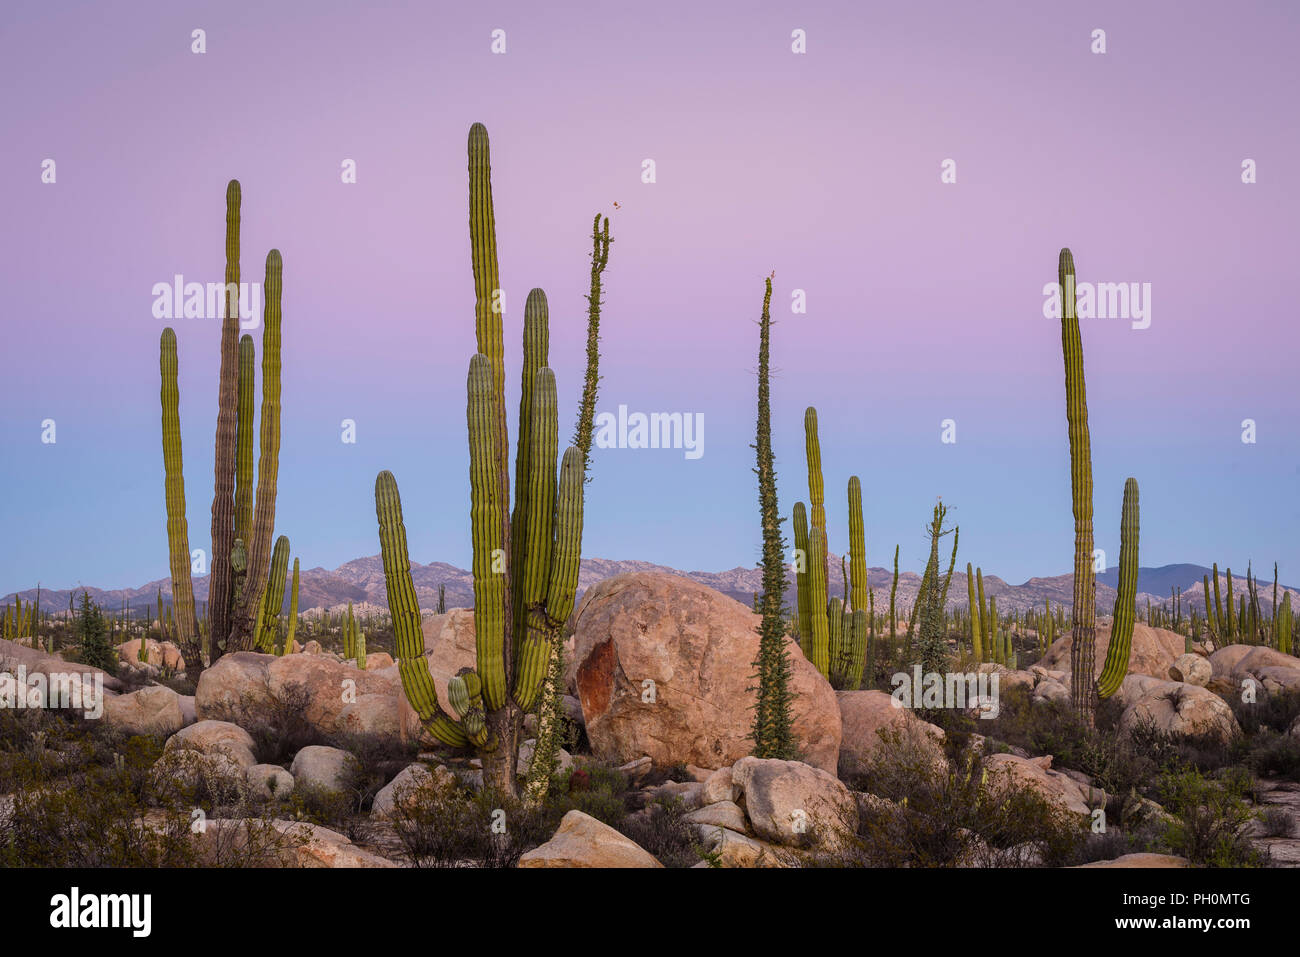 Cardon cactus and Boojum trees in Valle de los Cirios, Catavina Desert, Baja California, Mexico. Stock Photo